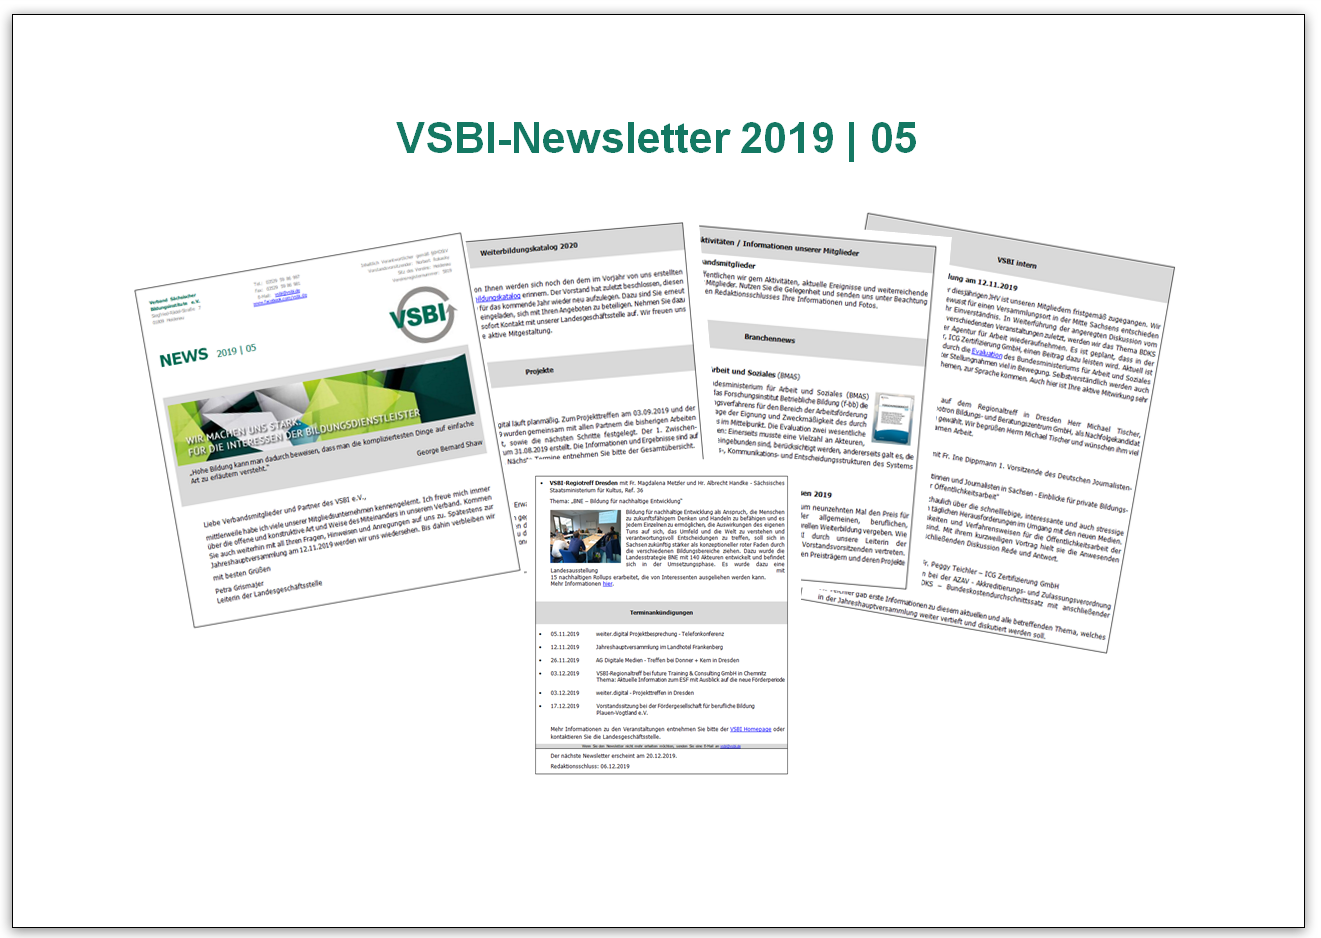 VSBI-Newsletter 2019 | 05